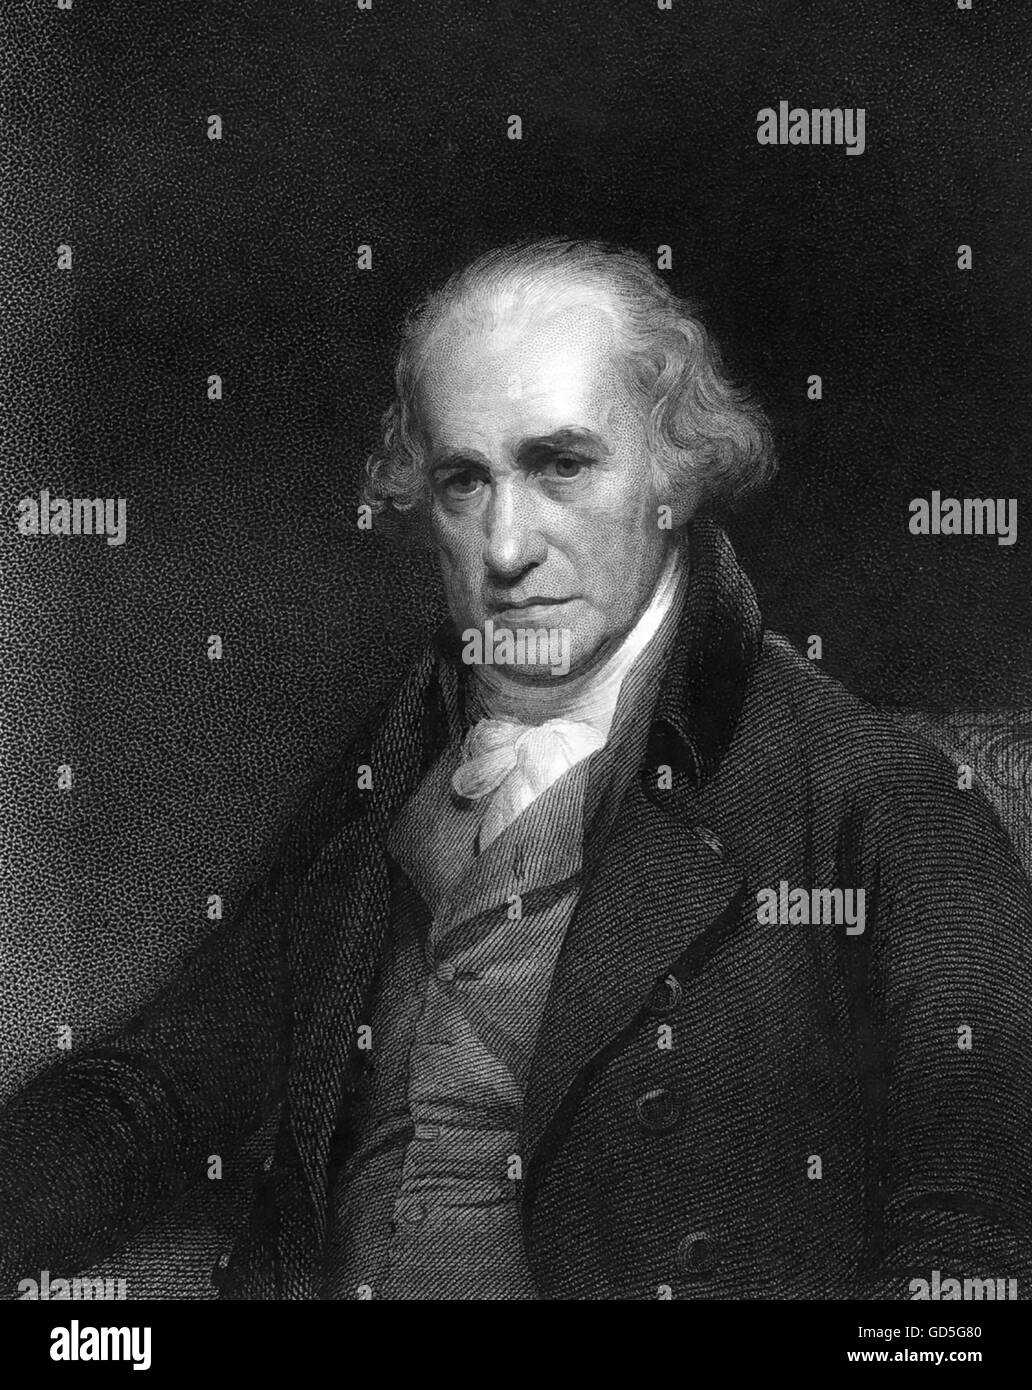 JAMES WATT (1736-1819) schottische Maschinenbau-Ingenieur und Erfinder. Stahlstich, basierend auf 1806 Gemälde von William Beechey Stockfoto